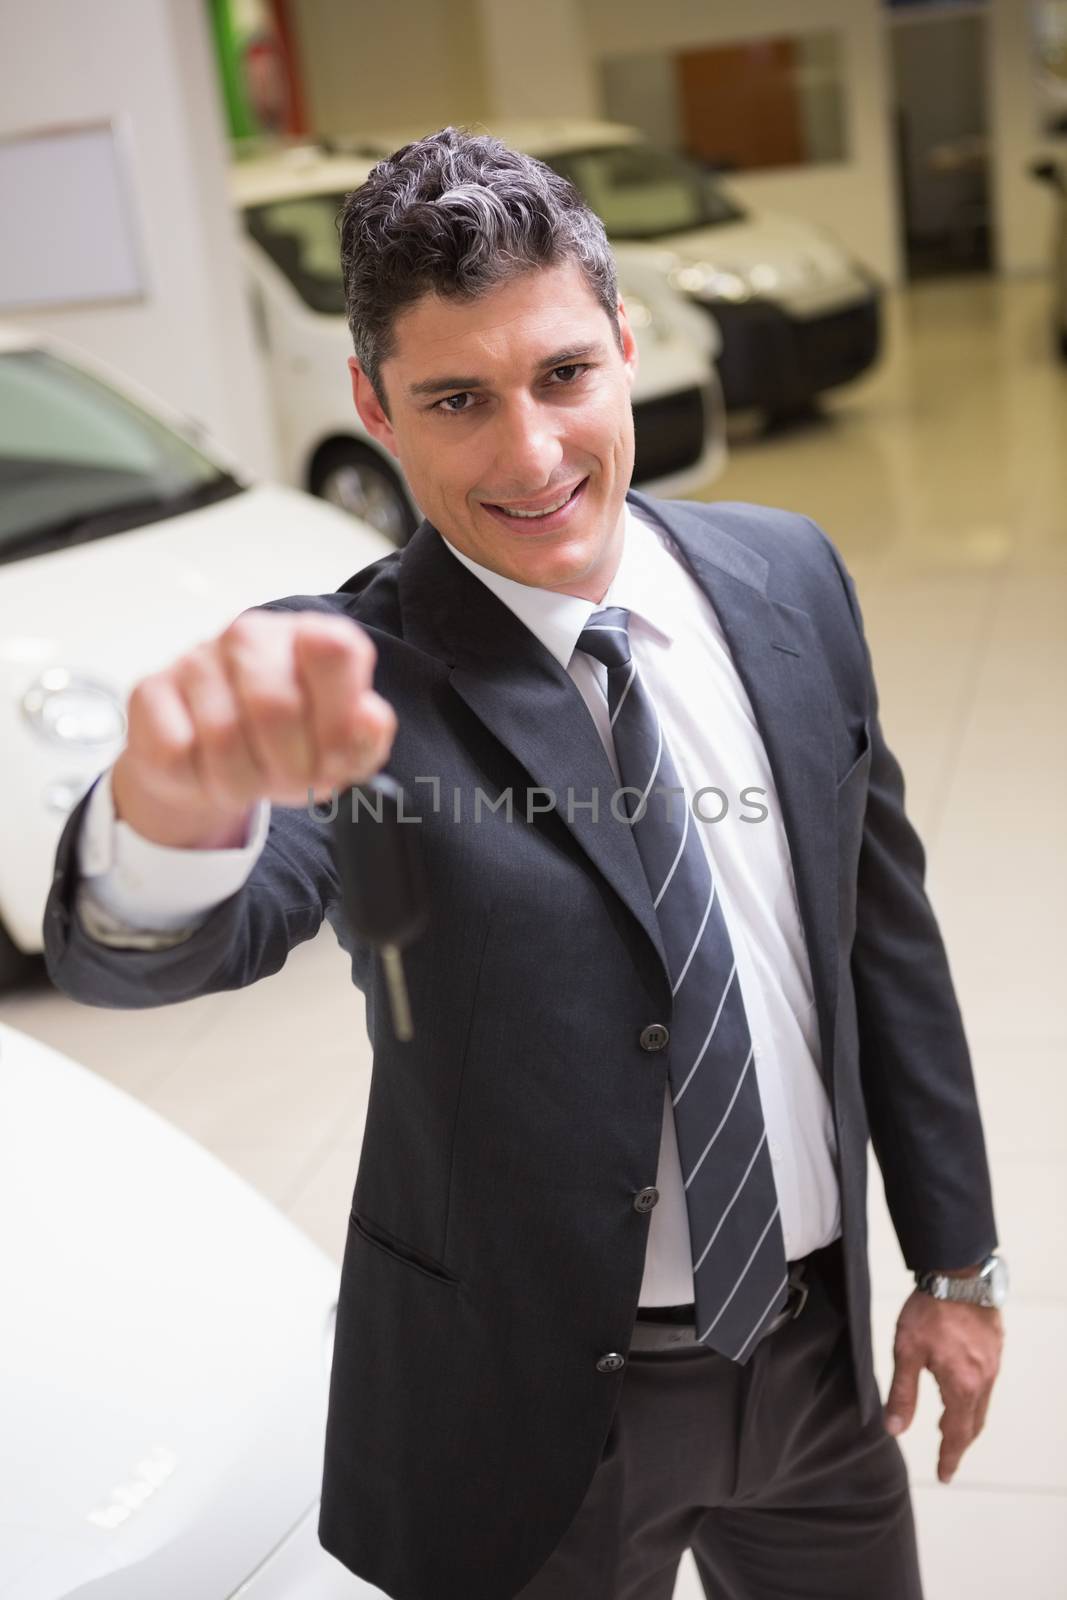 Salesman standing while offering car keys by Wavebreakmedia